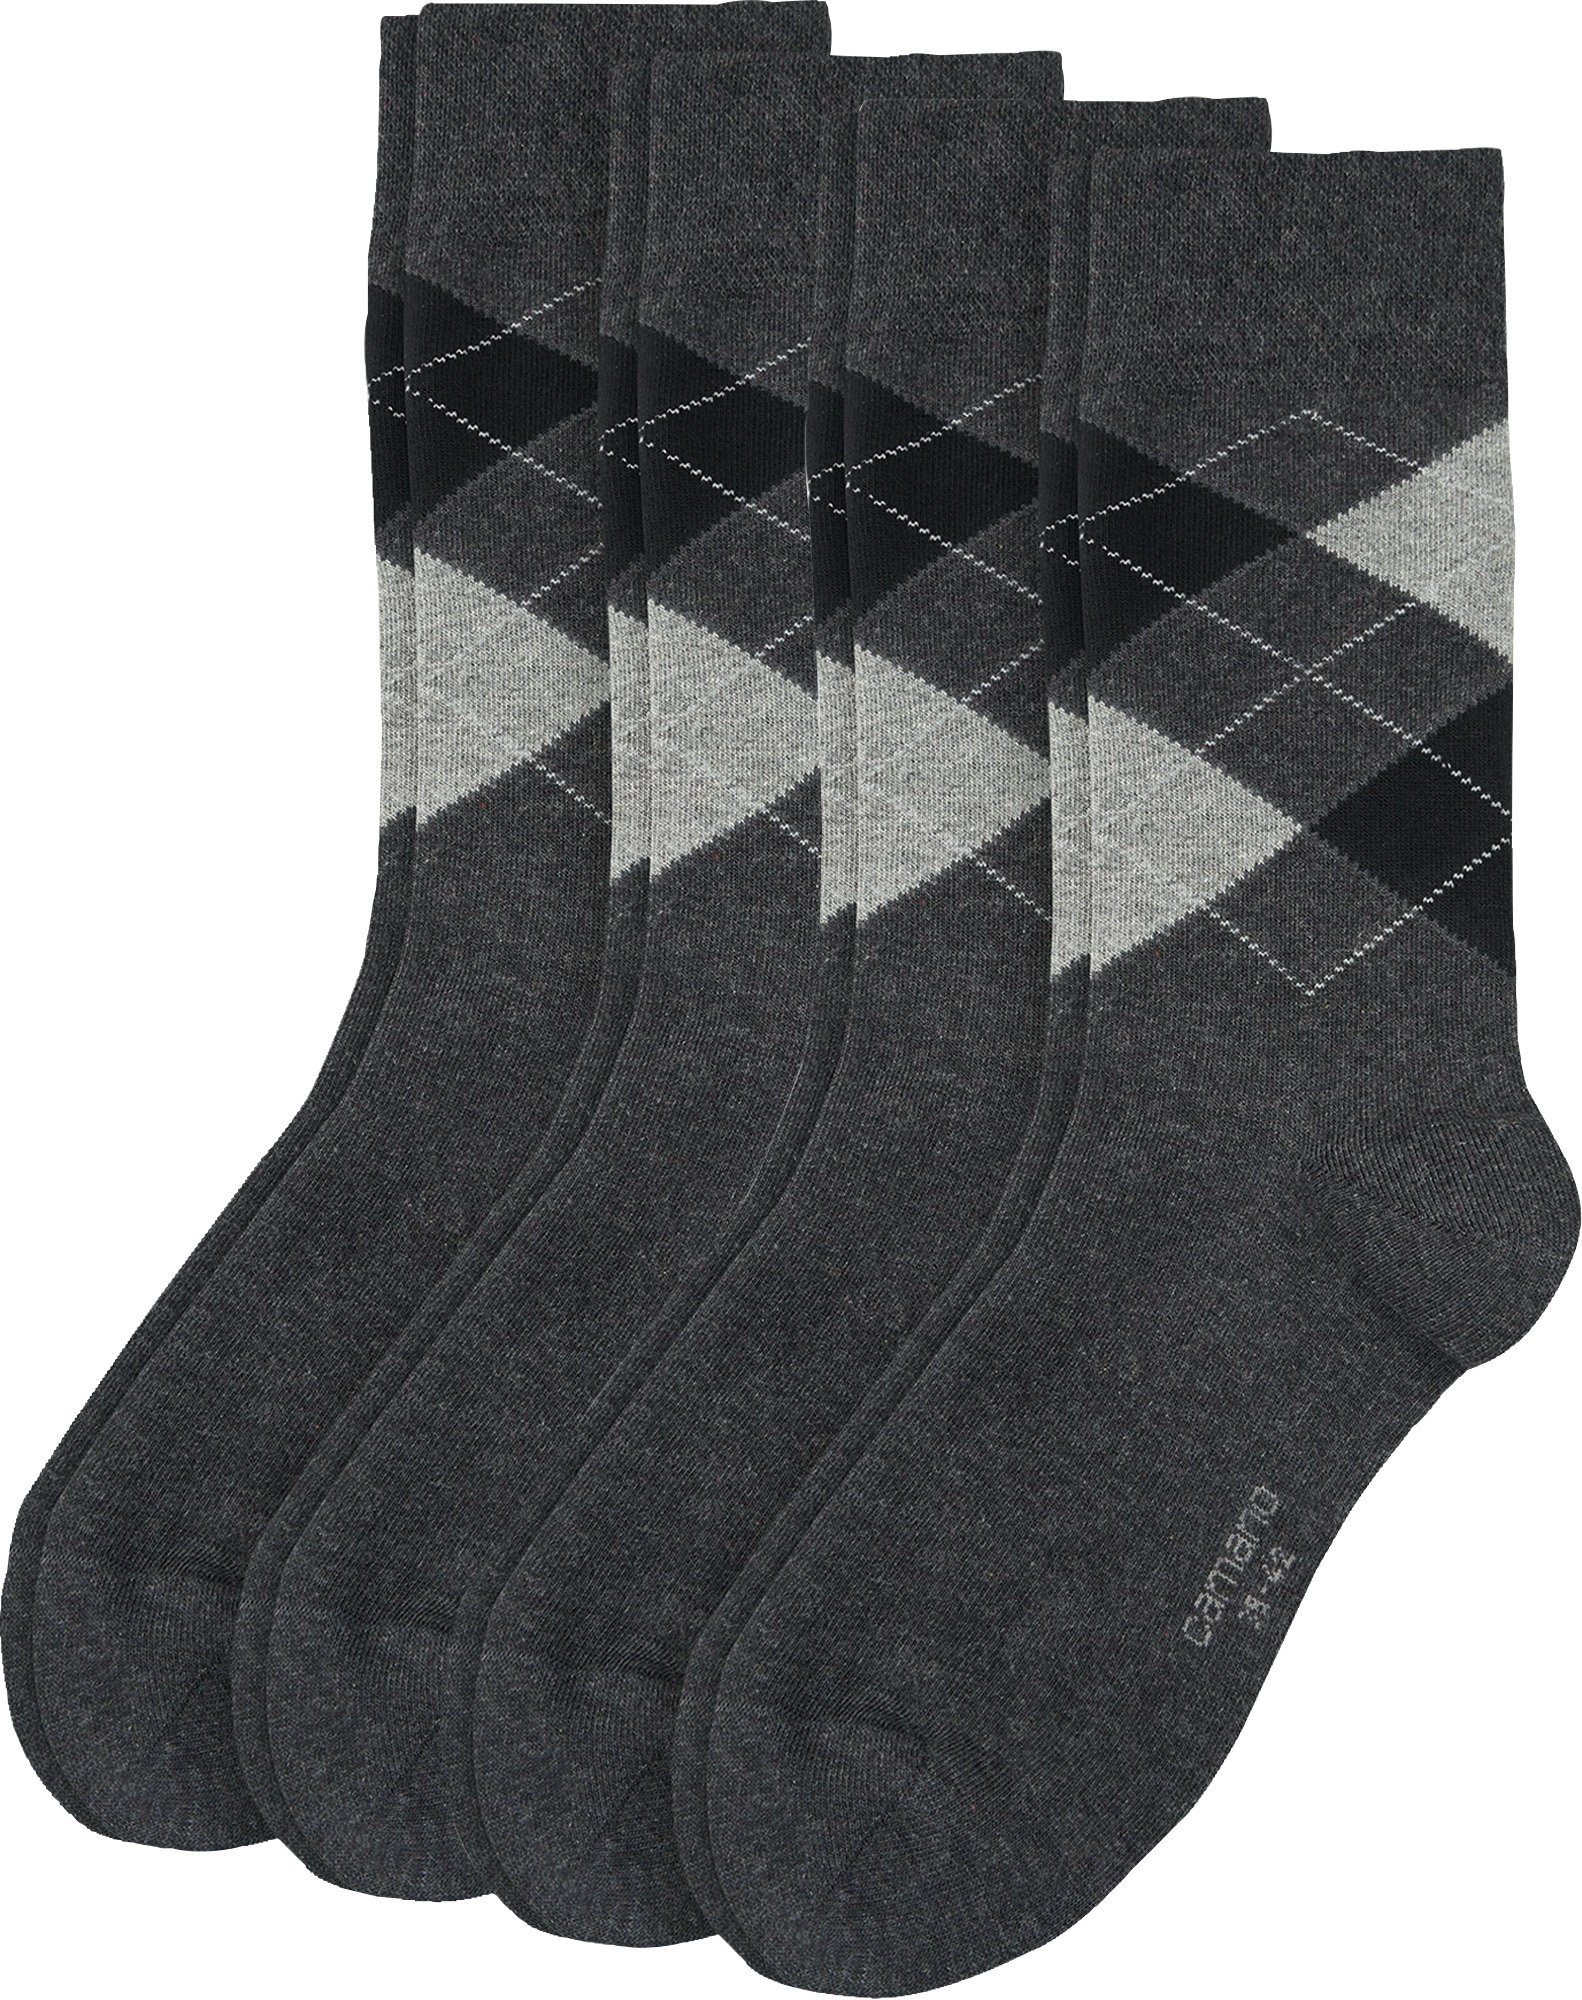 Camano Socken Herren-Socken 4 Paar gemustert